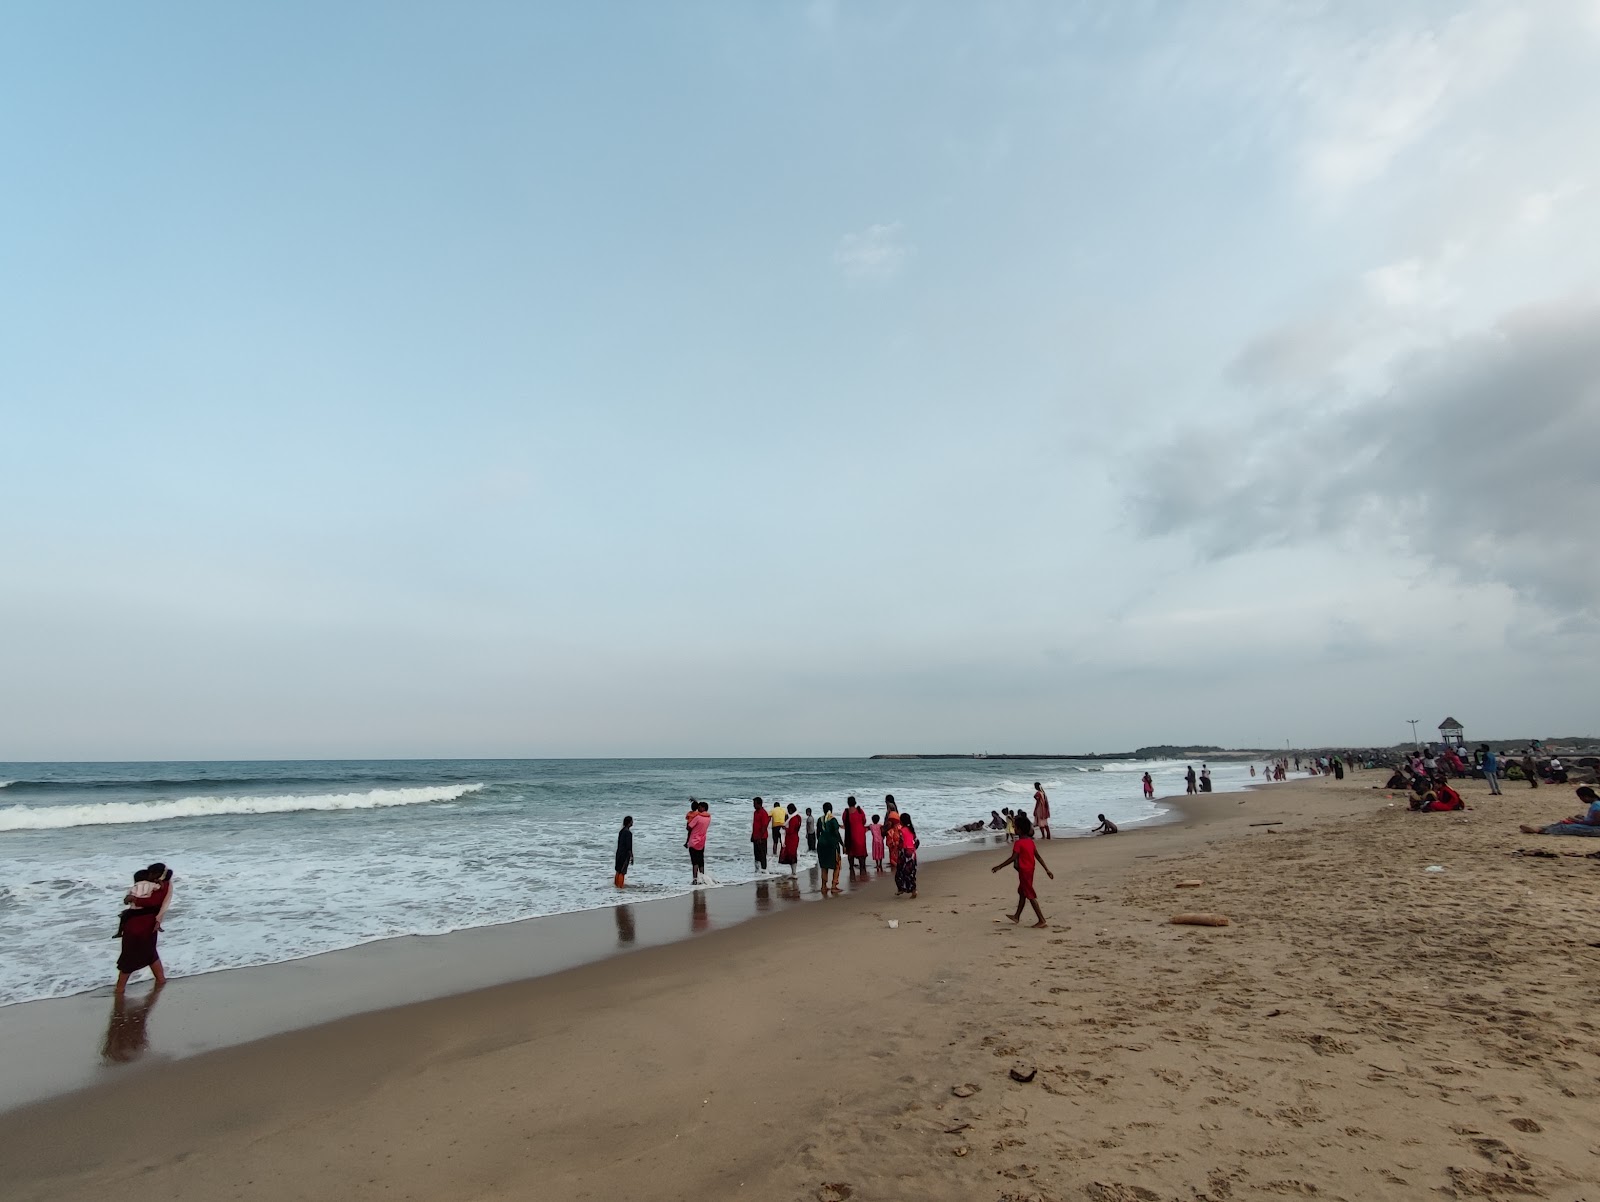 Φωτογραφία του Pondy Marinaa με φωτεινή άμμος επιφάνεια